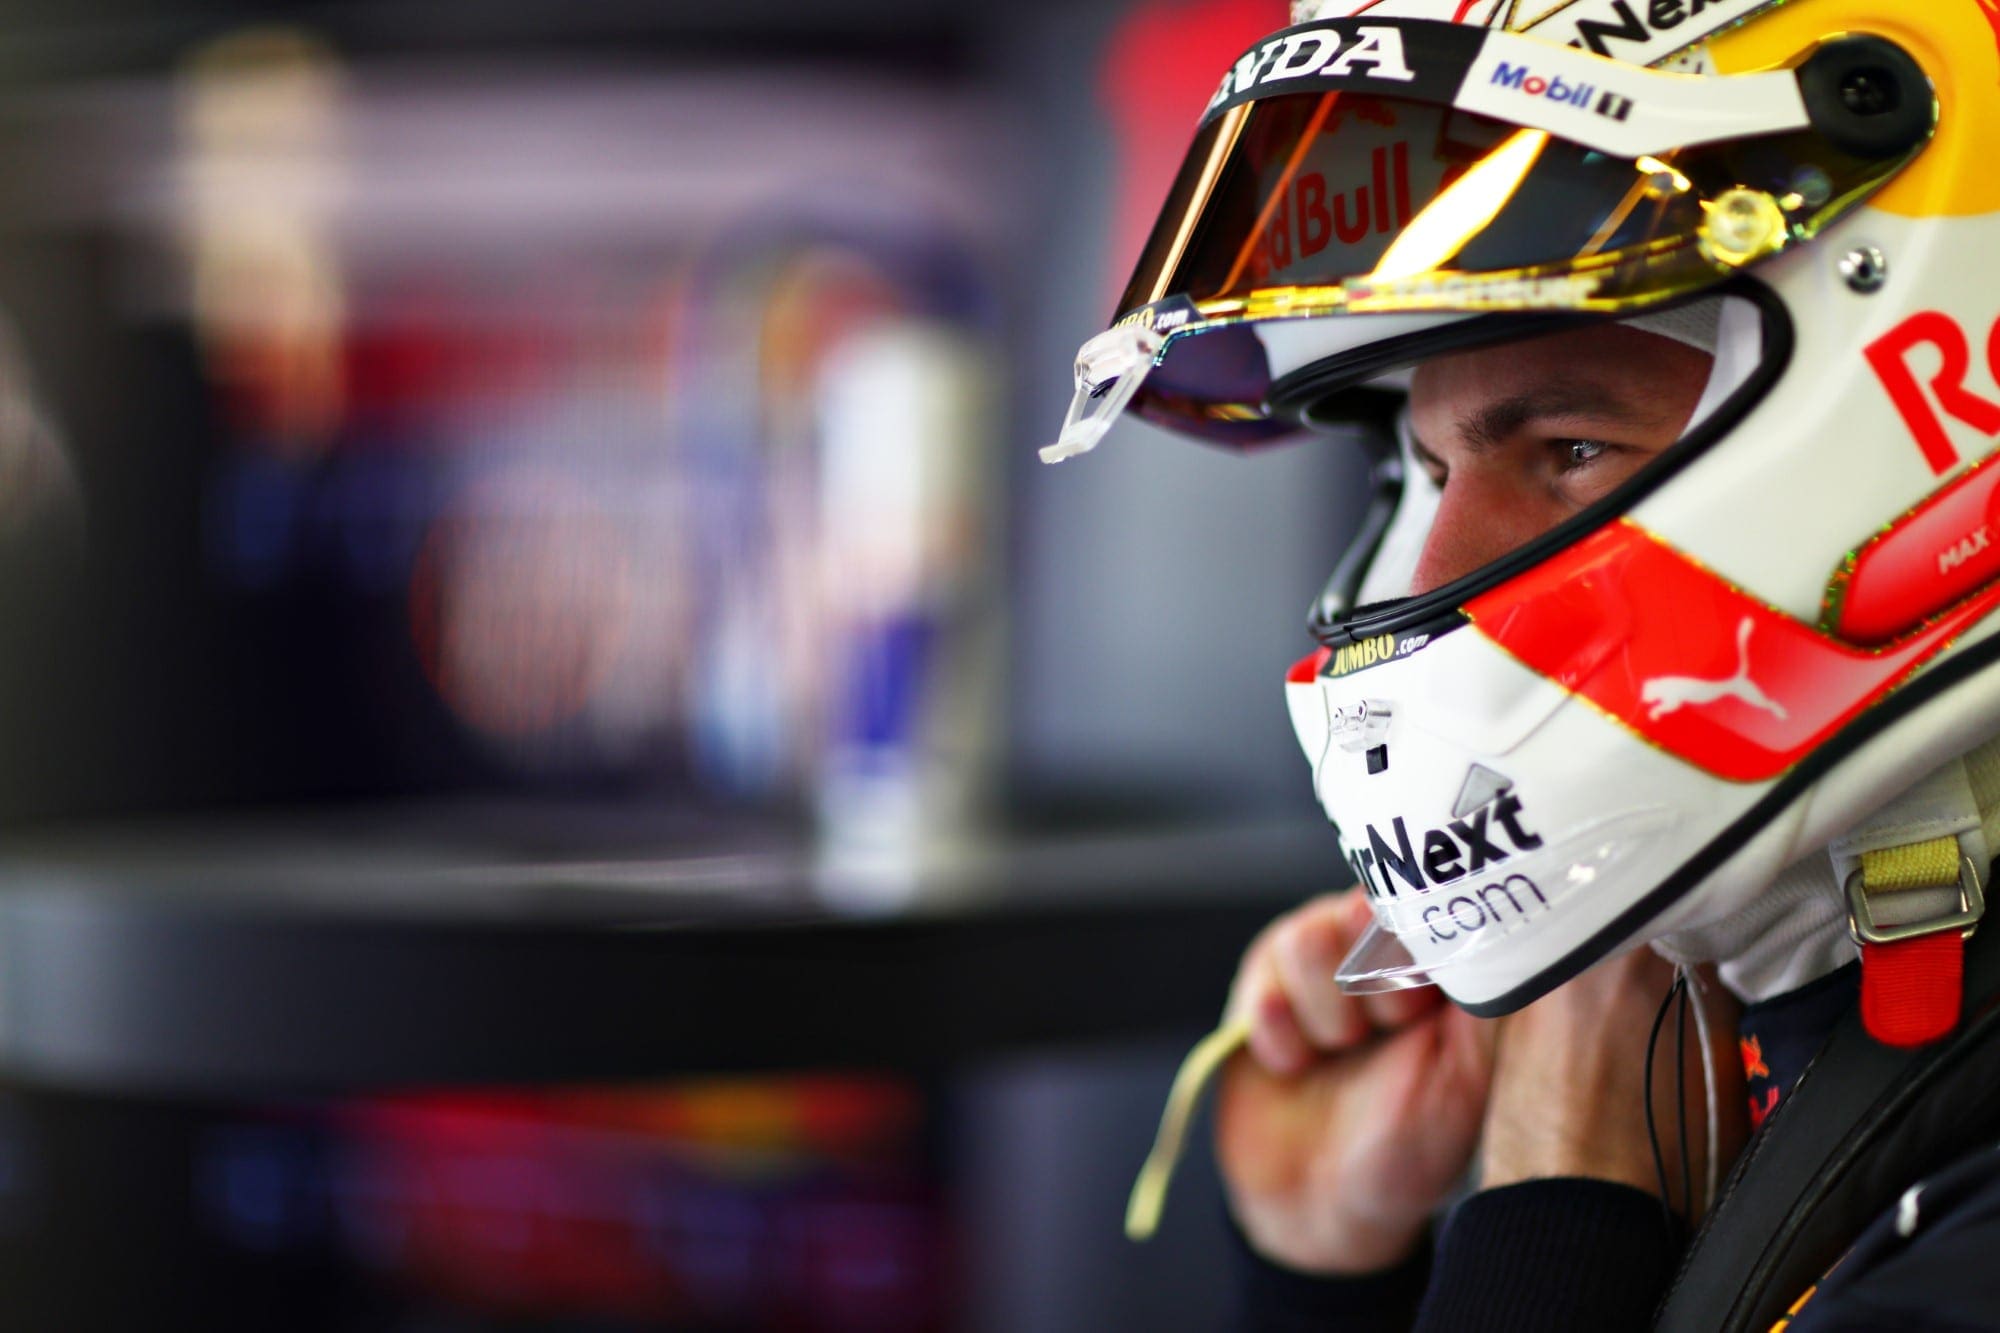 Max Verstappen (Red Bull RB16B)